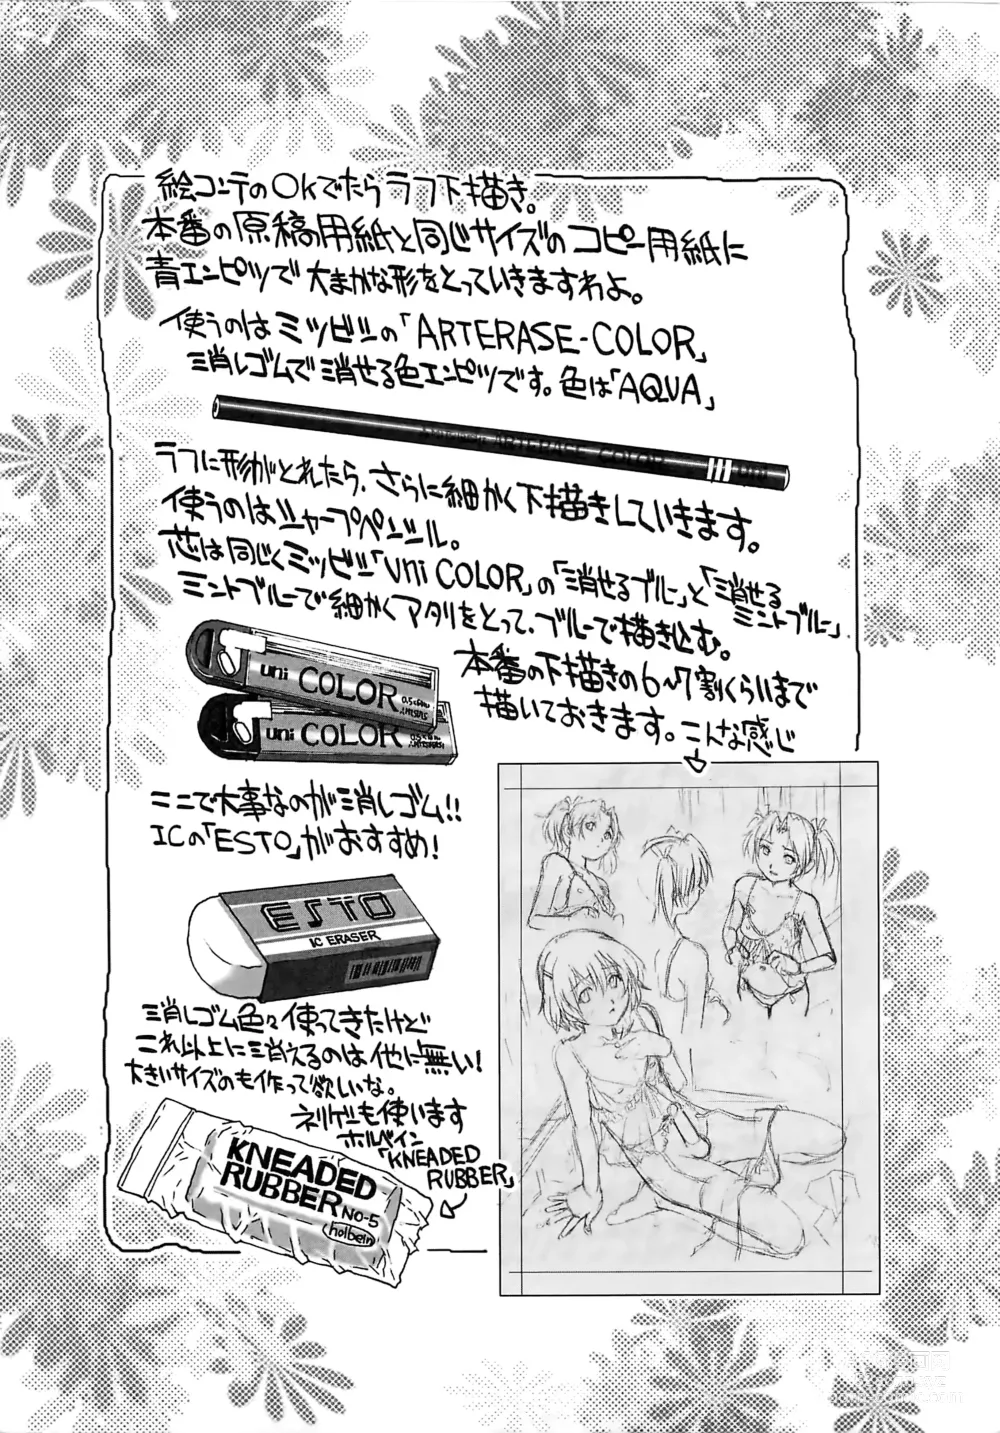 Page 188 of manga Bokutachi Otokonoko